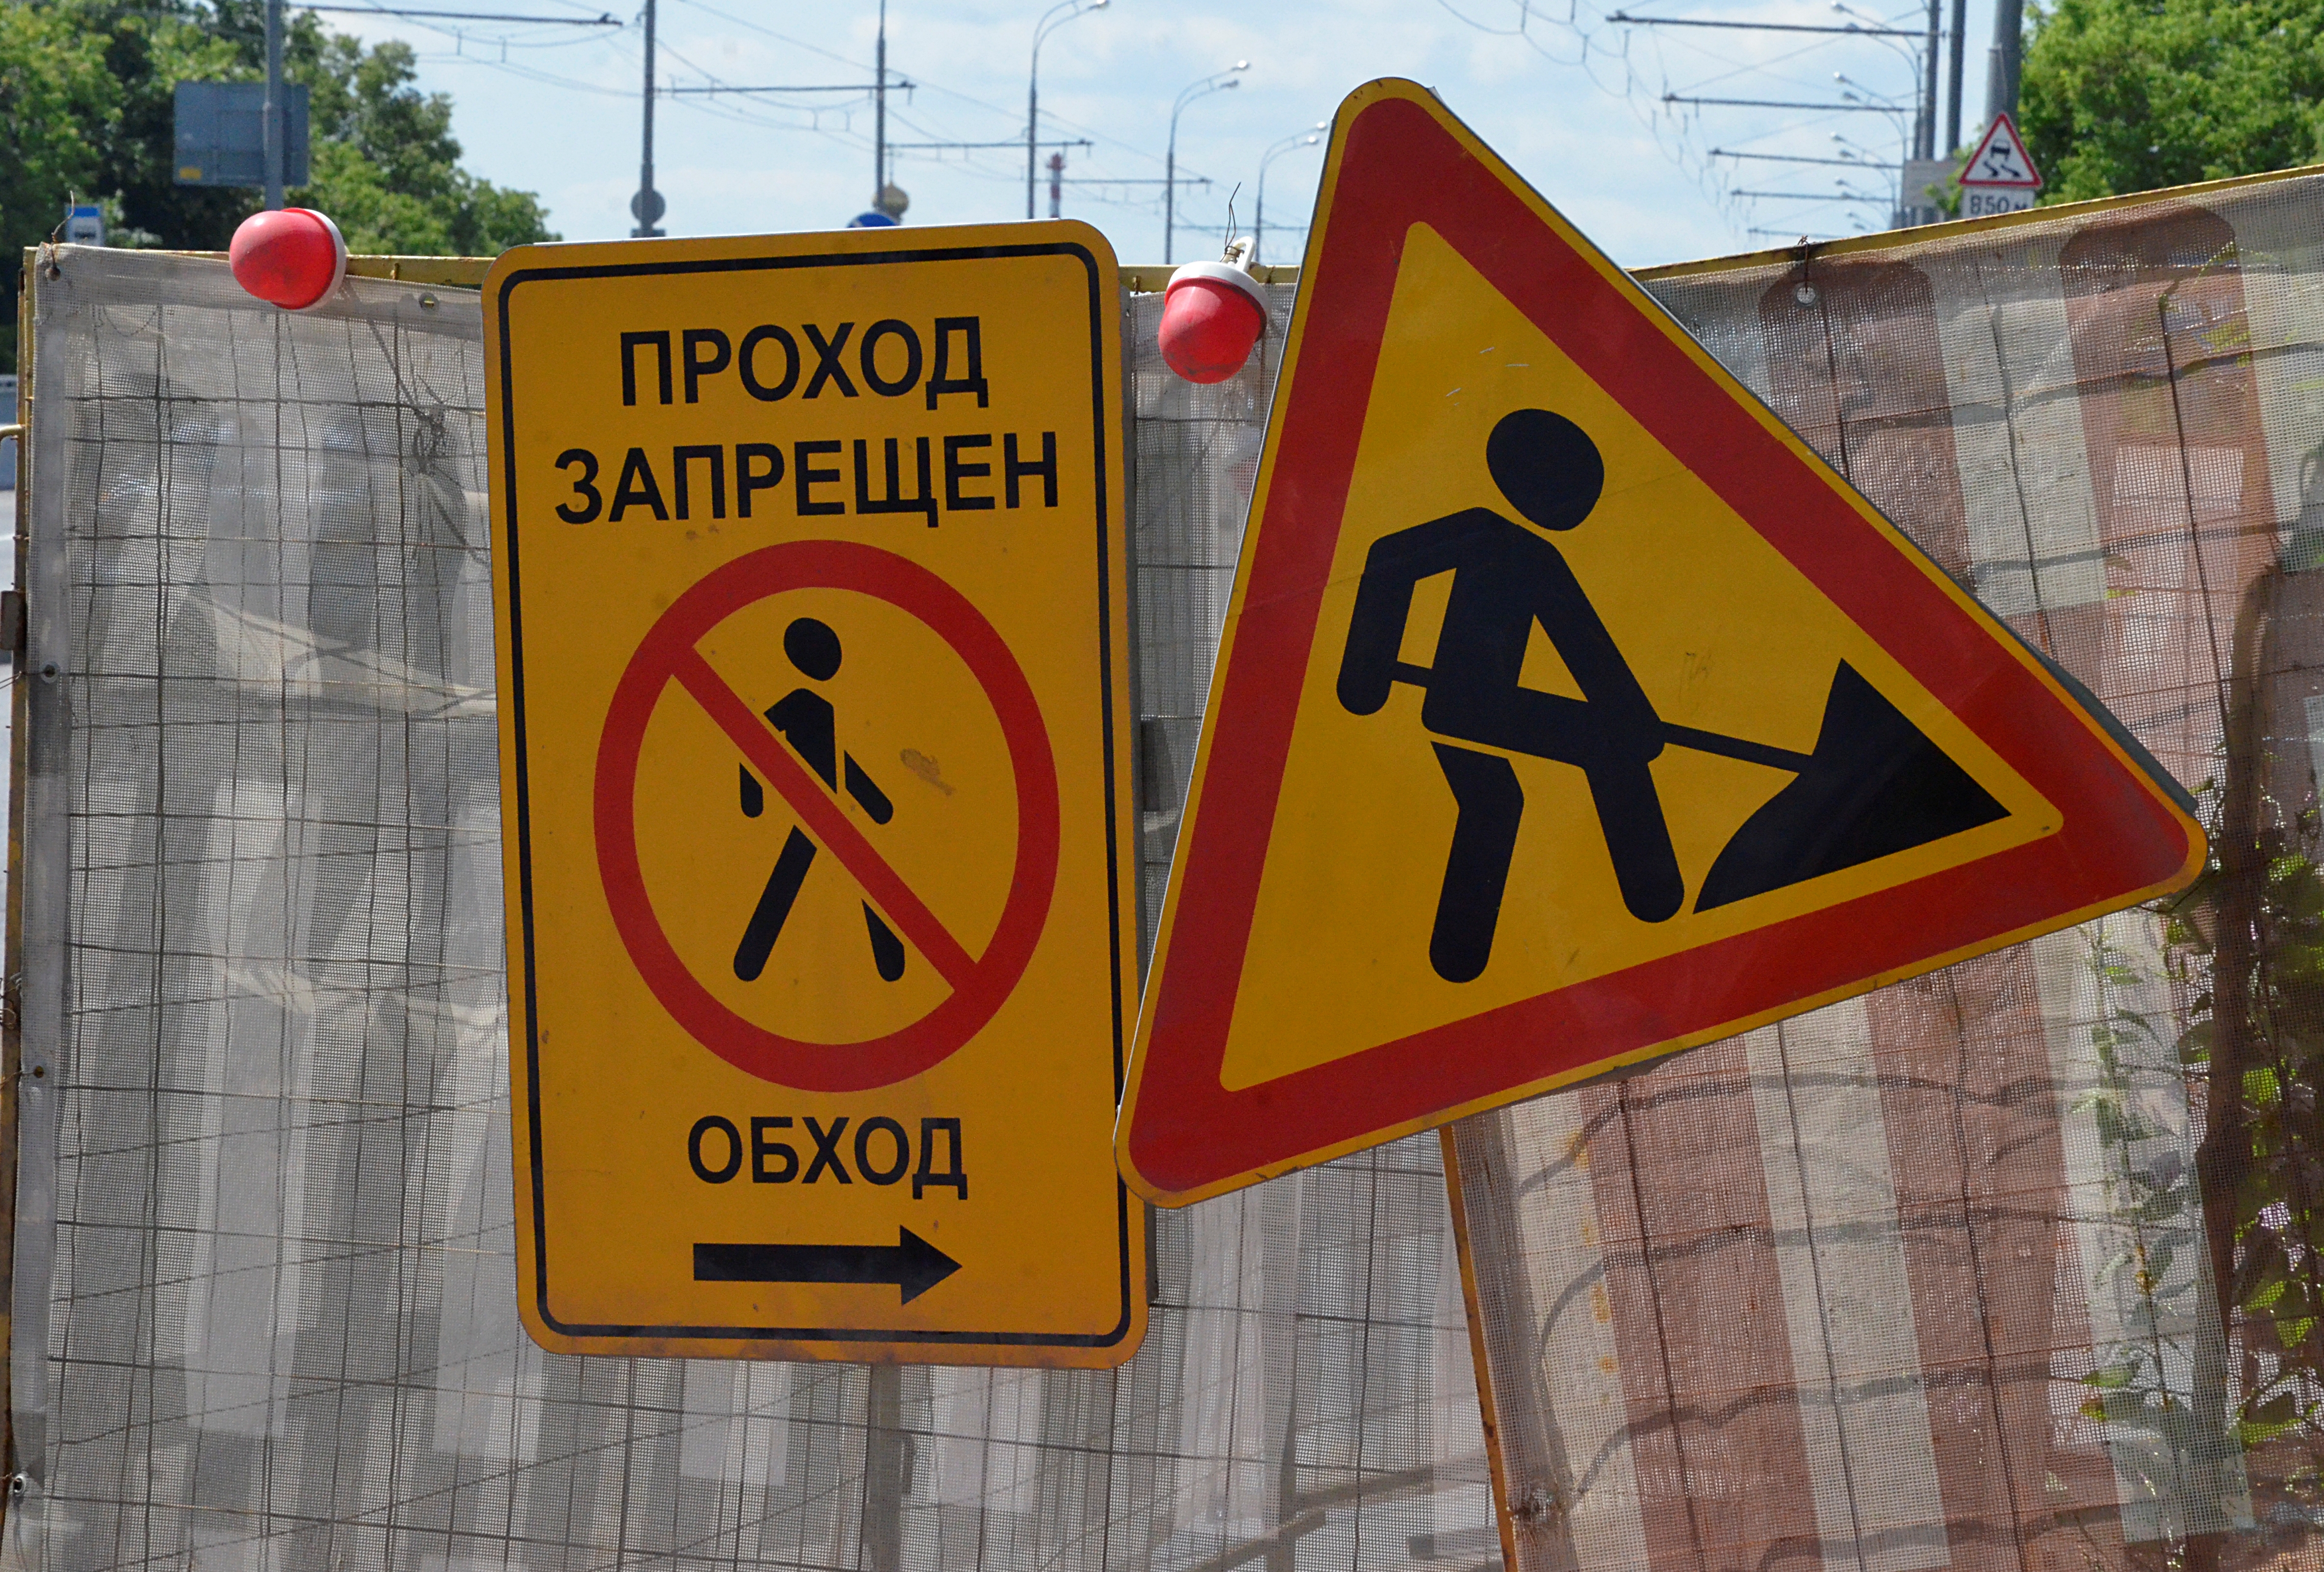 Водонепроницаемое дорожное покрытие приведут в порядок по одному из адресов в Красносельском районе. Фото: Анна Быкова